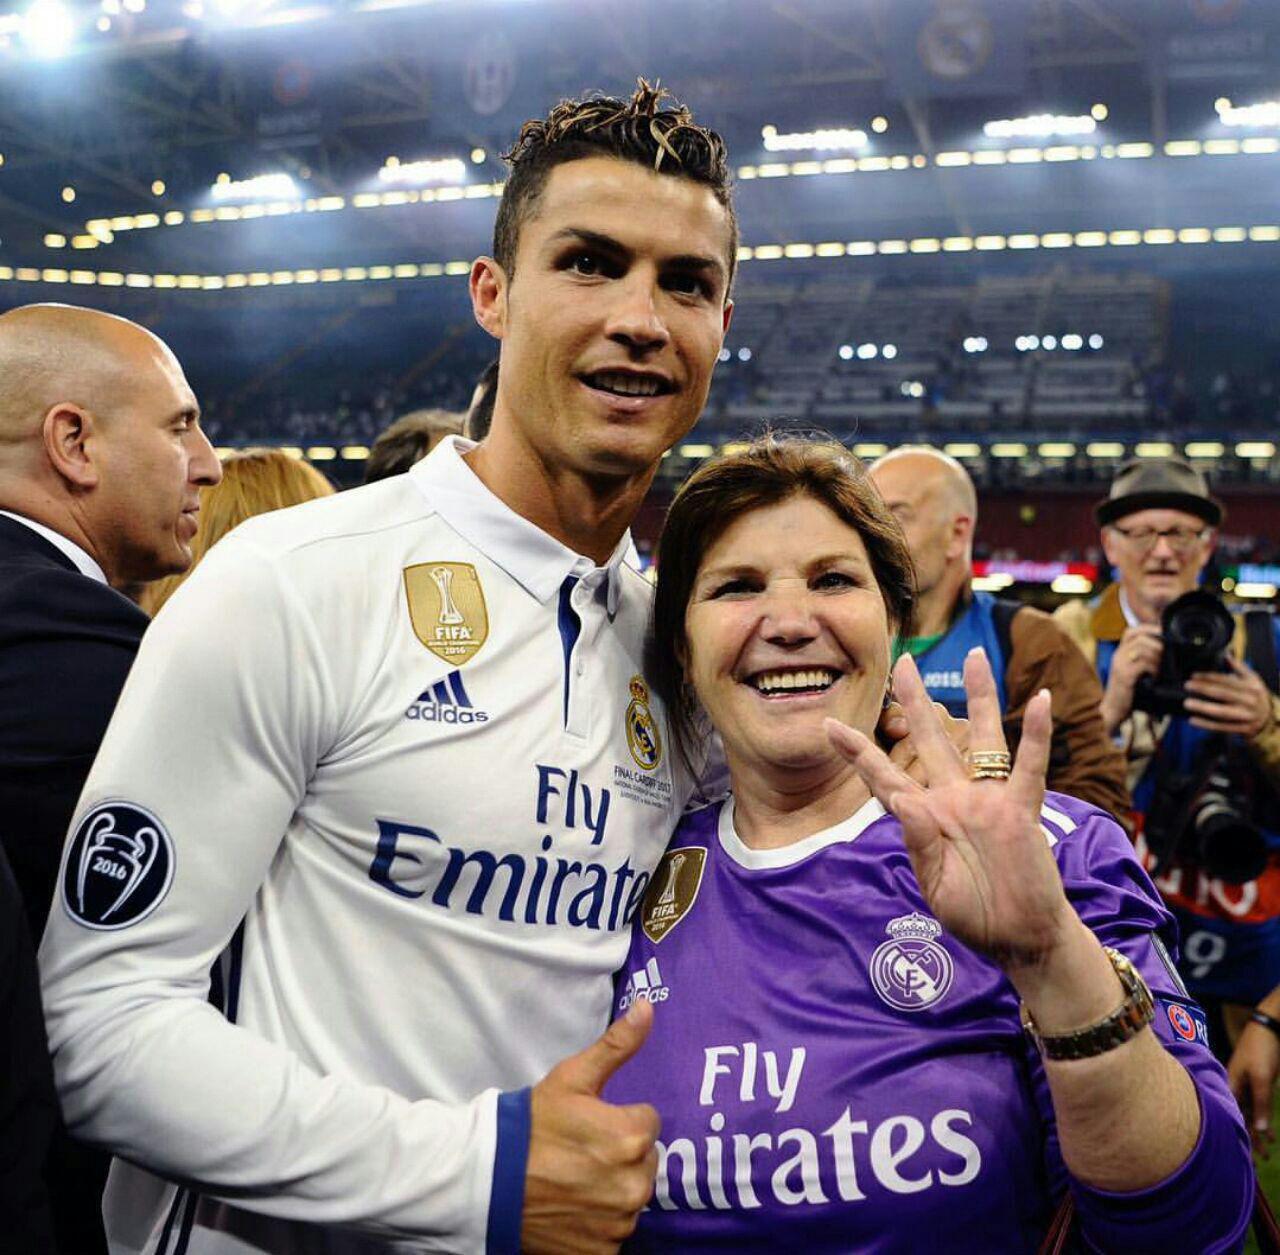 عکس/ مادر رونالدو در جشن چهارمین قهرمانی اروپایی پسرش